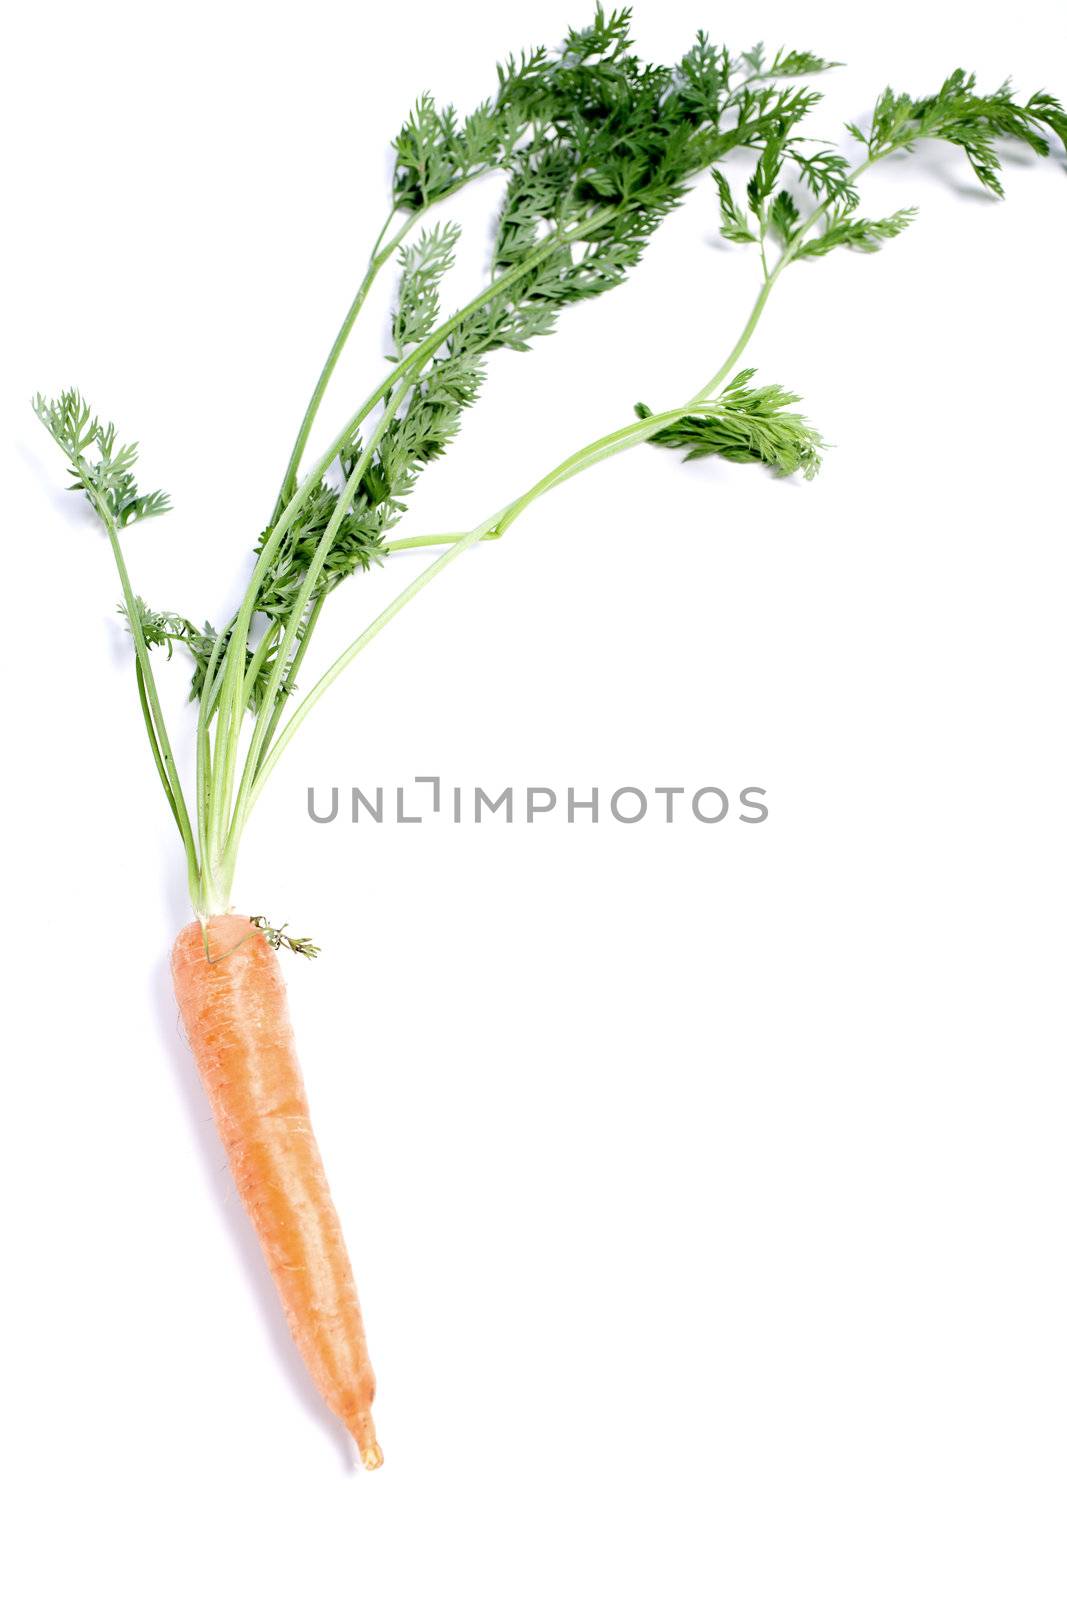 Carrot on white background by studiofi